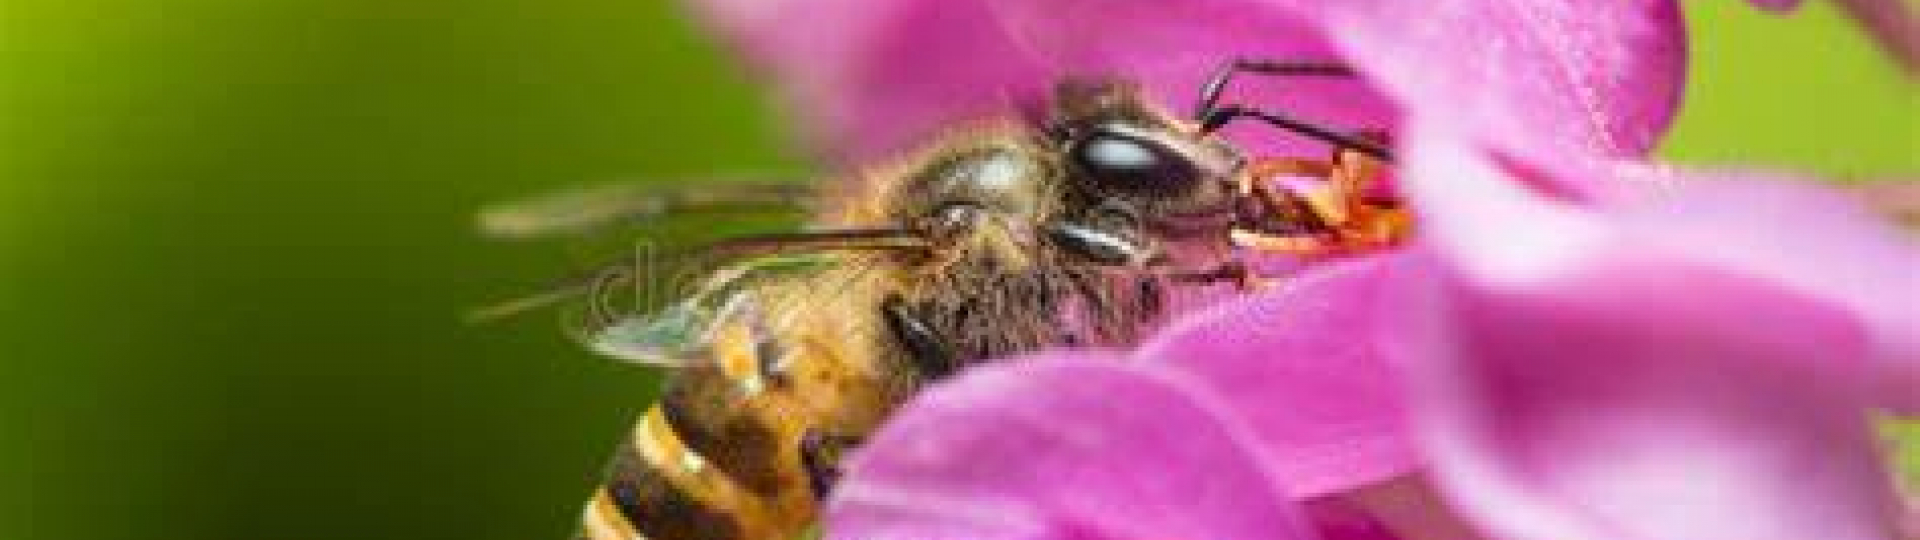 immagine api ed impollinazione